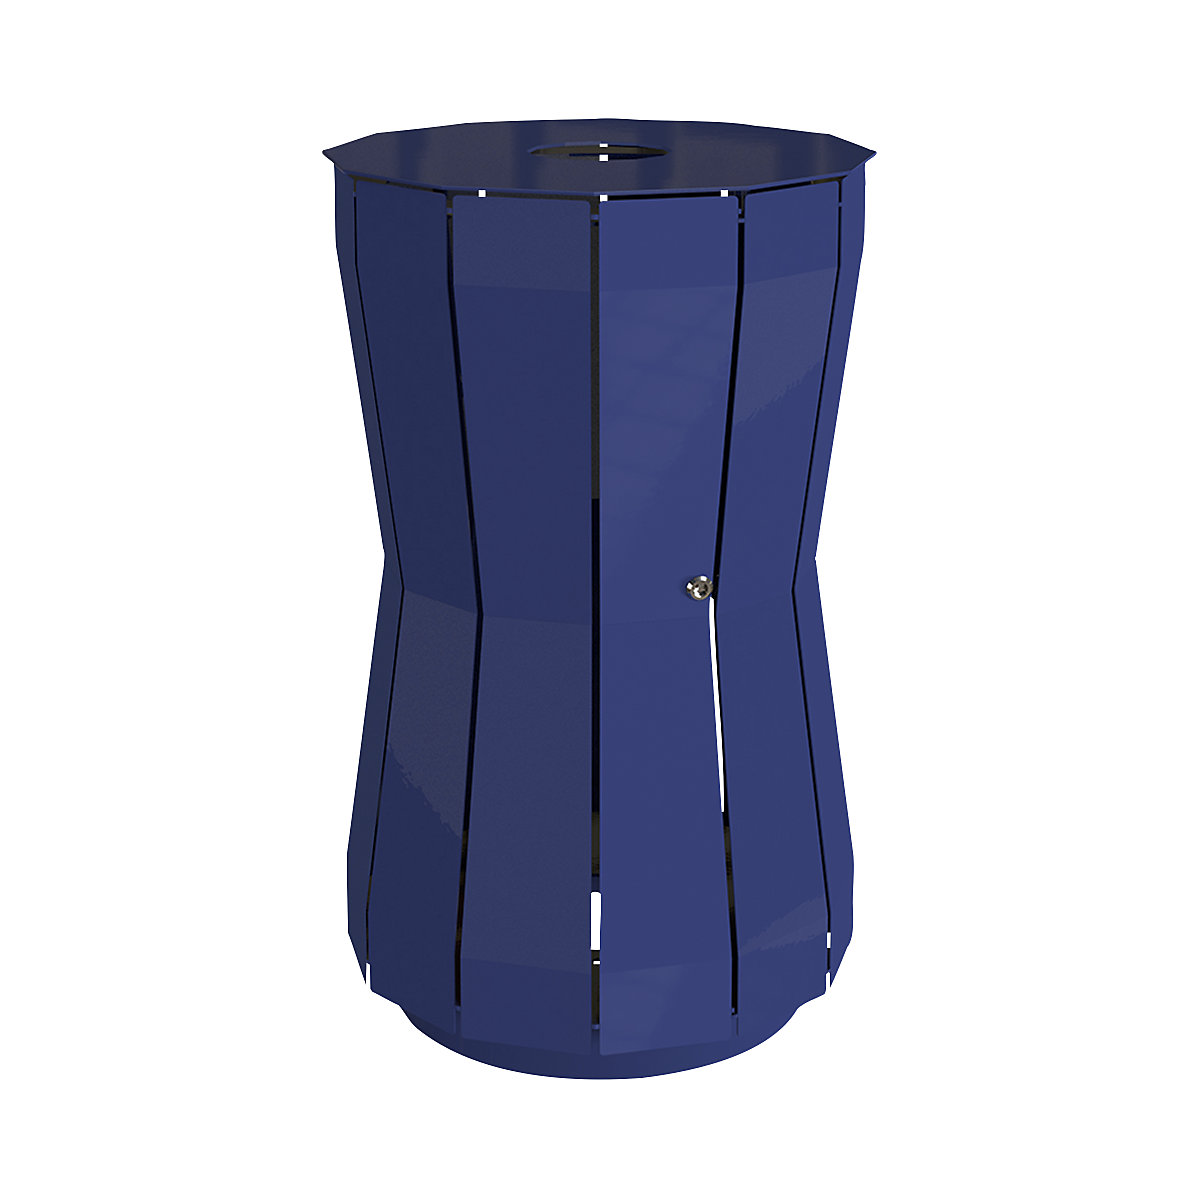 Außen-Abfallbehälter, Volumen 105 l, HxBxT 960 x 605 x 605 mm, kobaltblau